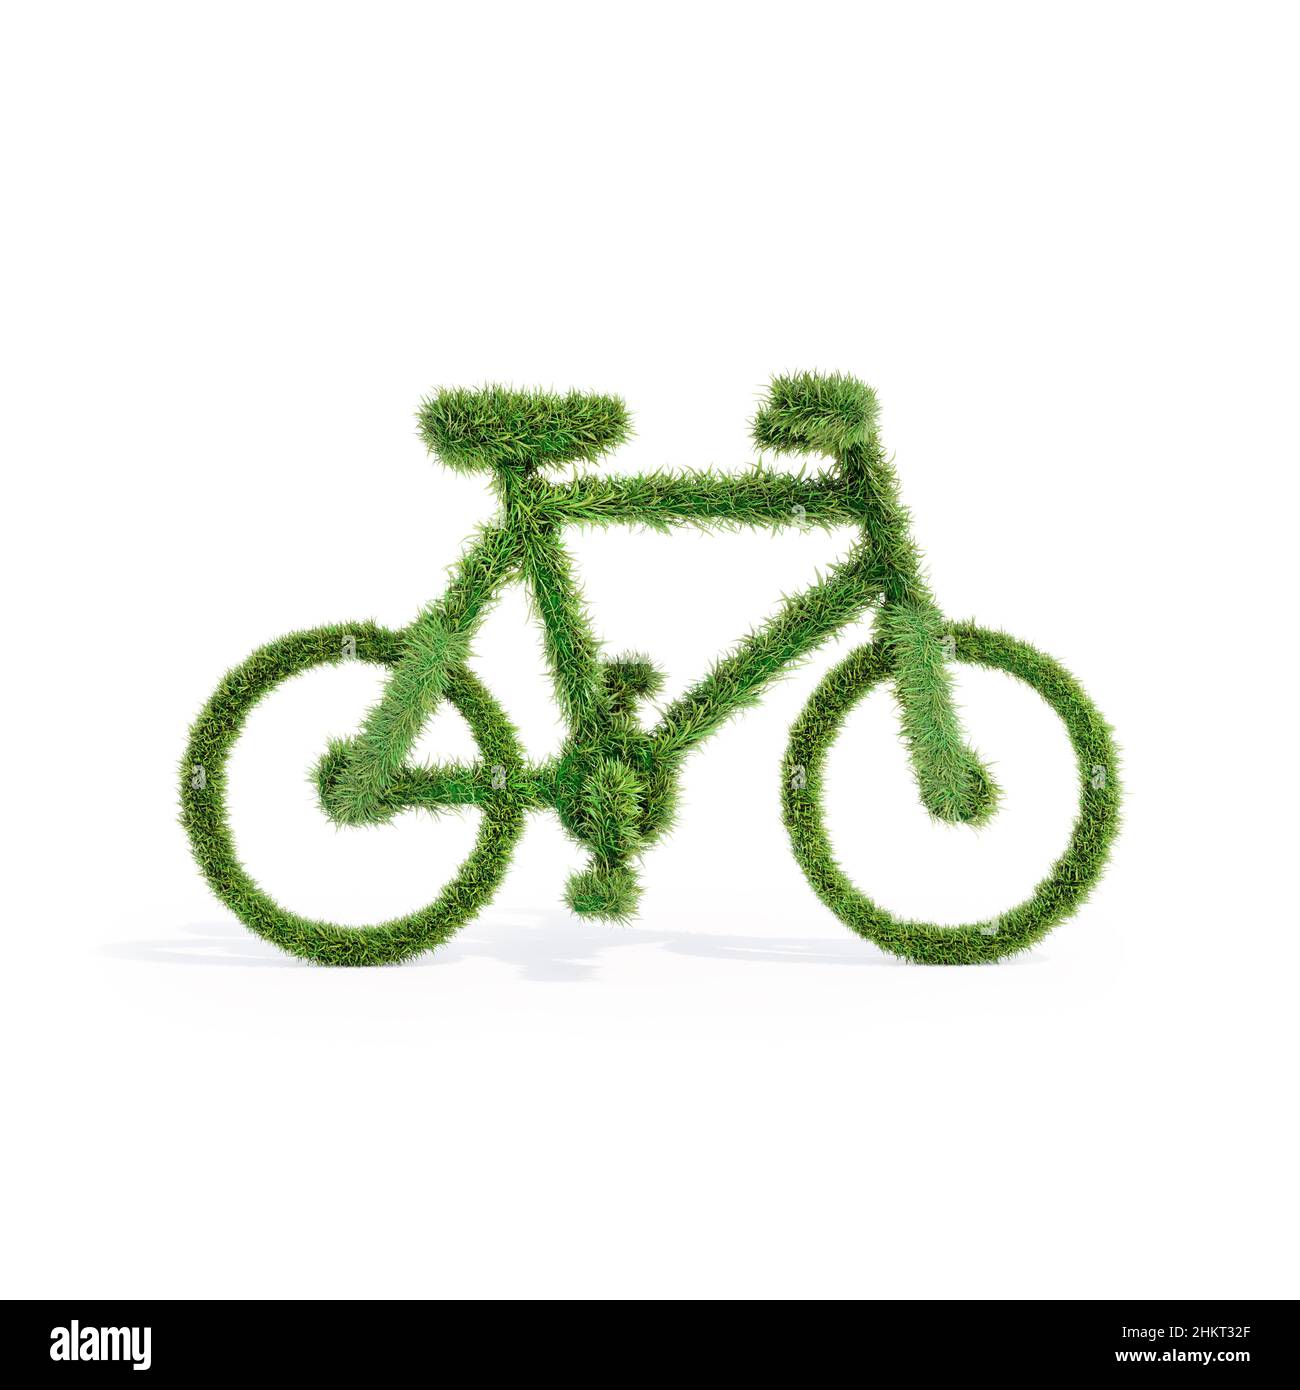 3D Rendering von Gras bedeckt vereinfachte Fahrradform - Umweltbewusstsein Konzept Stockfoto